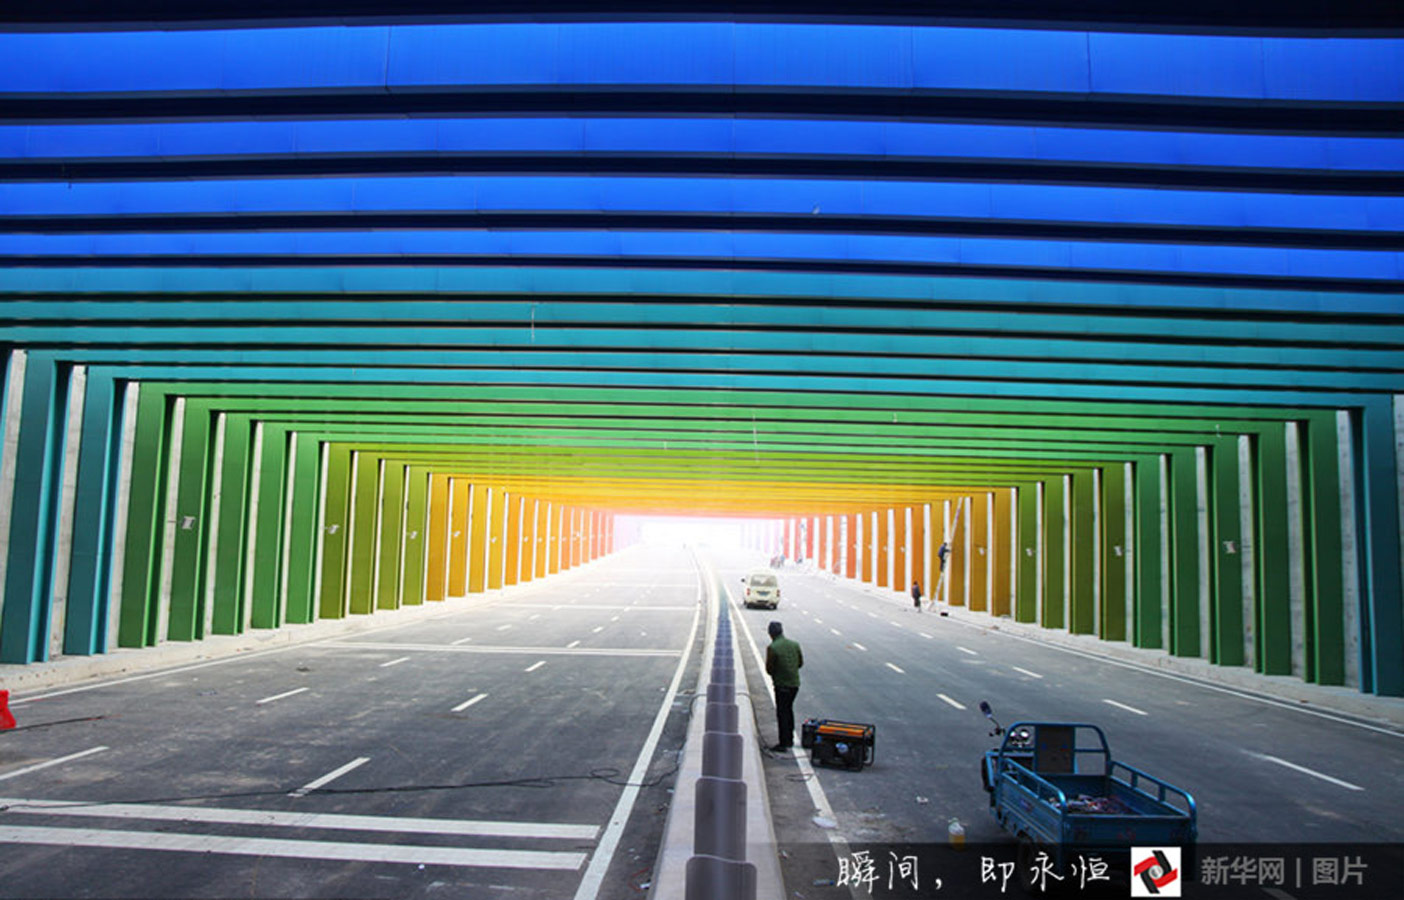 近日,郑州一条"彩虹隧道"吸引市民的关注,驾车通过时,渐变的色彩给